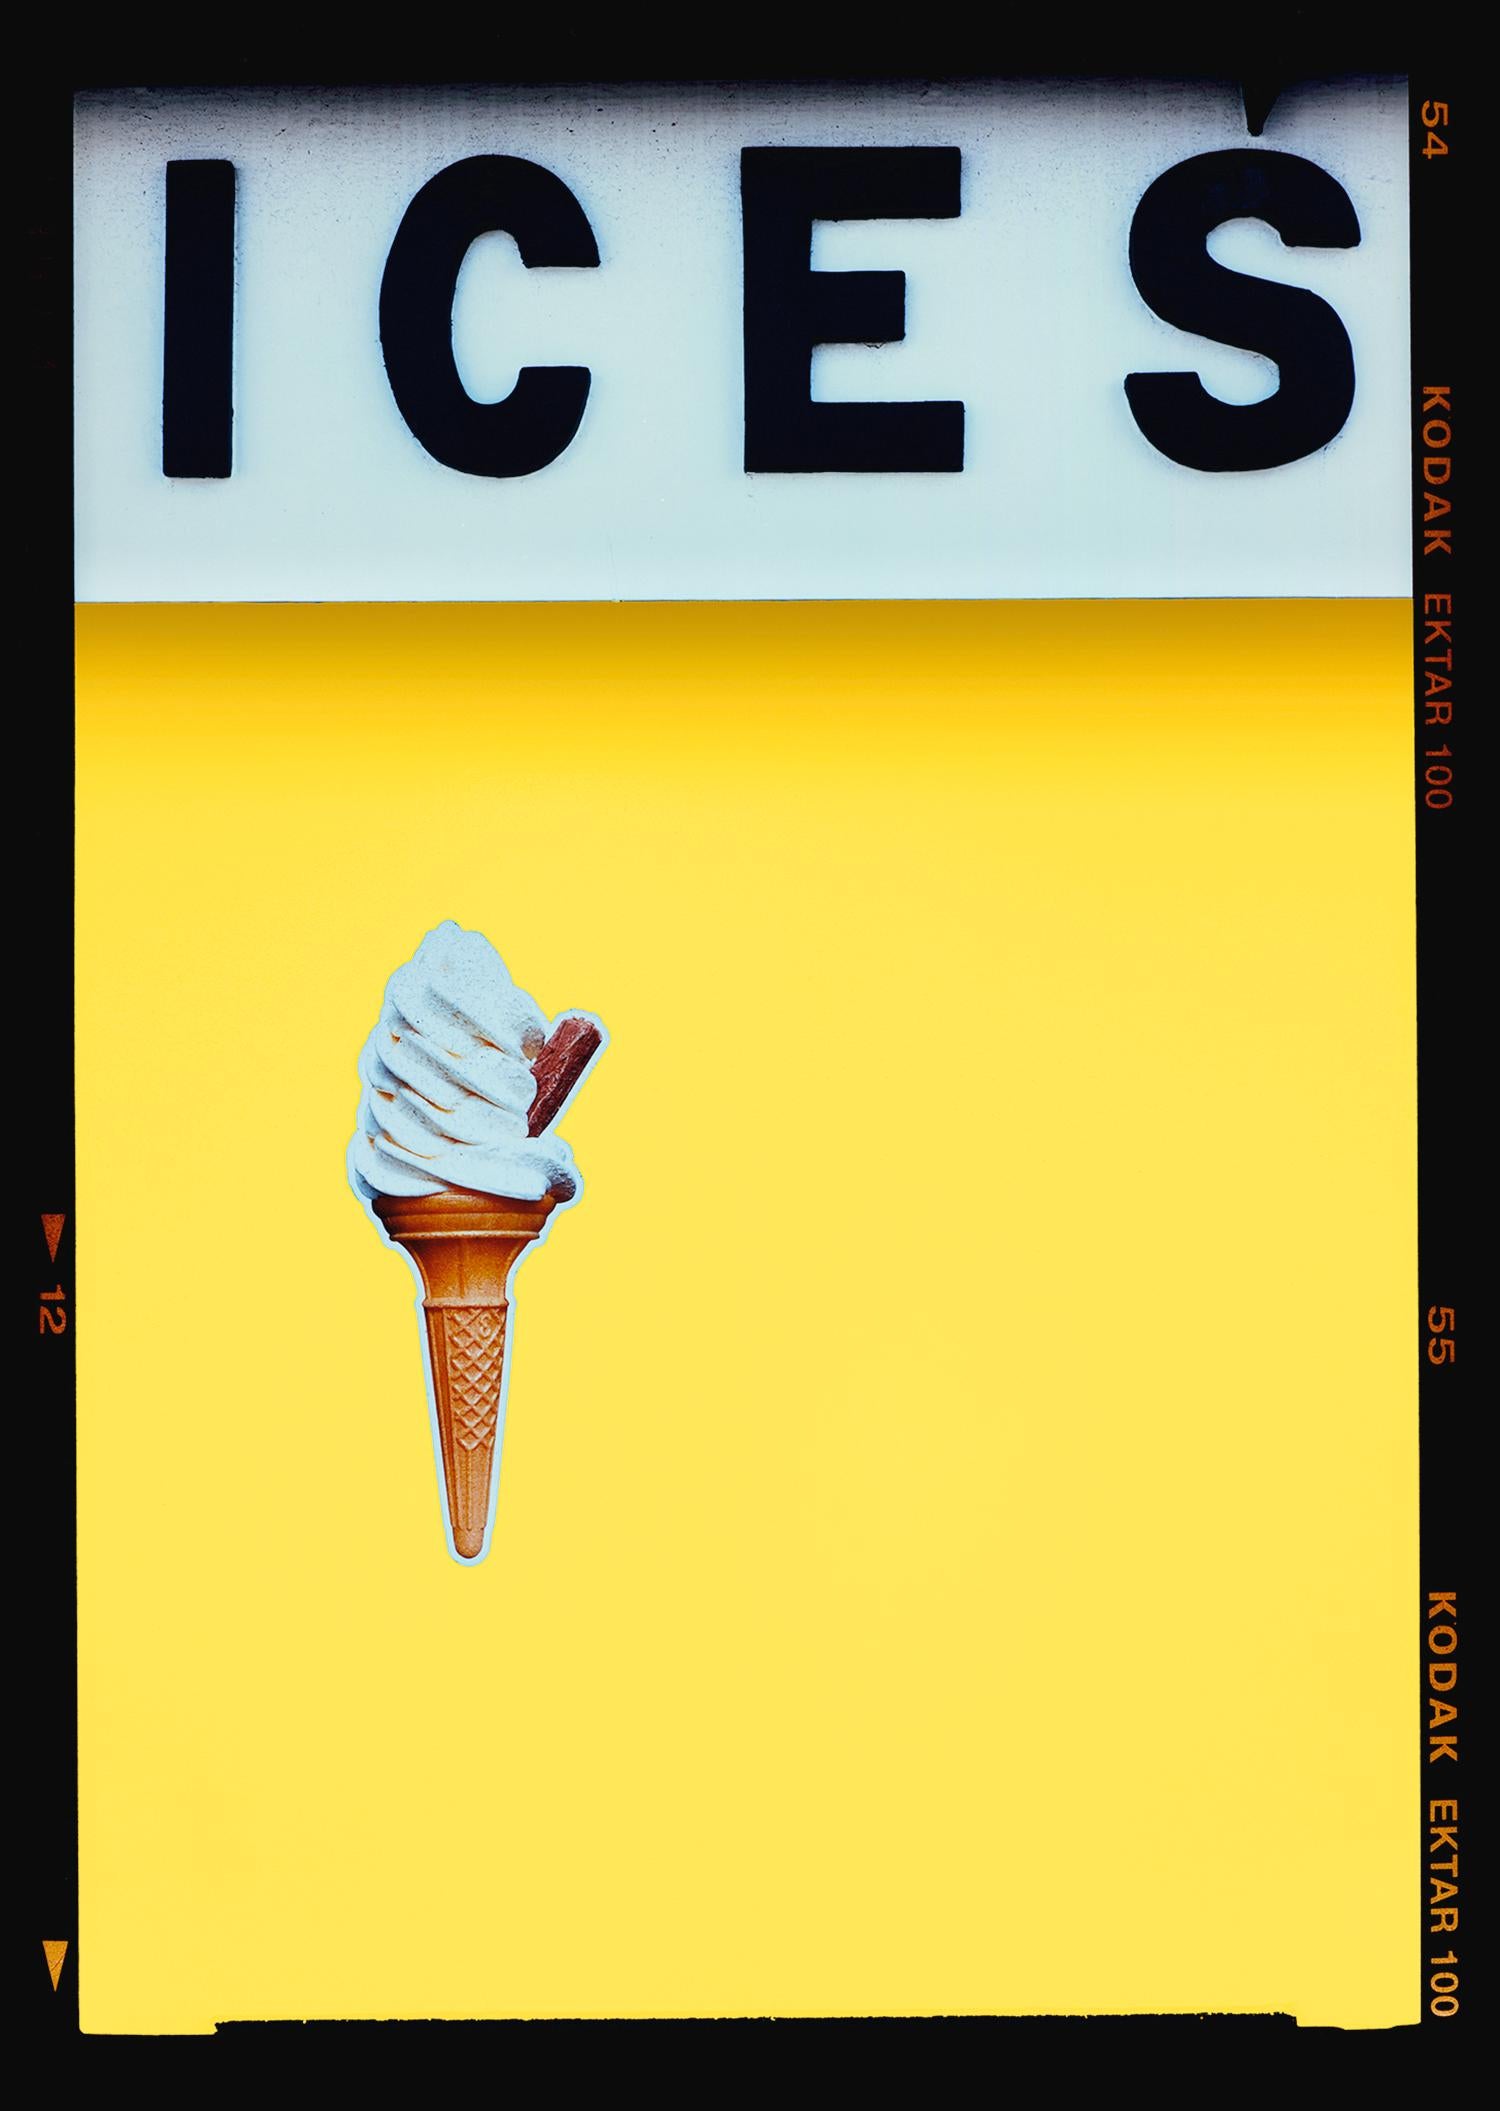 ICES - Vier gerahmte Kunstwerke, Fotografien von Richard Heeps. 
Hier zu sehen in Gelb, Korallenrosa, Viridiangrün und Babyblau. 
Nehmen Sie Kontakt auf, um andere Größen oder Farbkombinationen anzufordern.

Jedes Kunstwerk misst 27,5